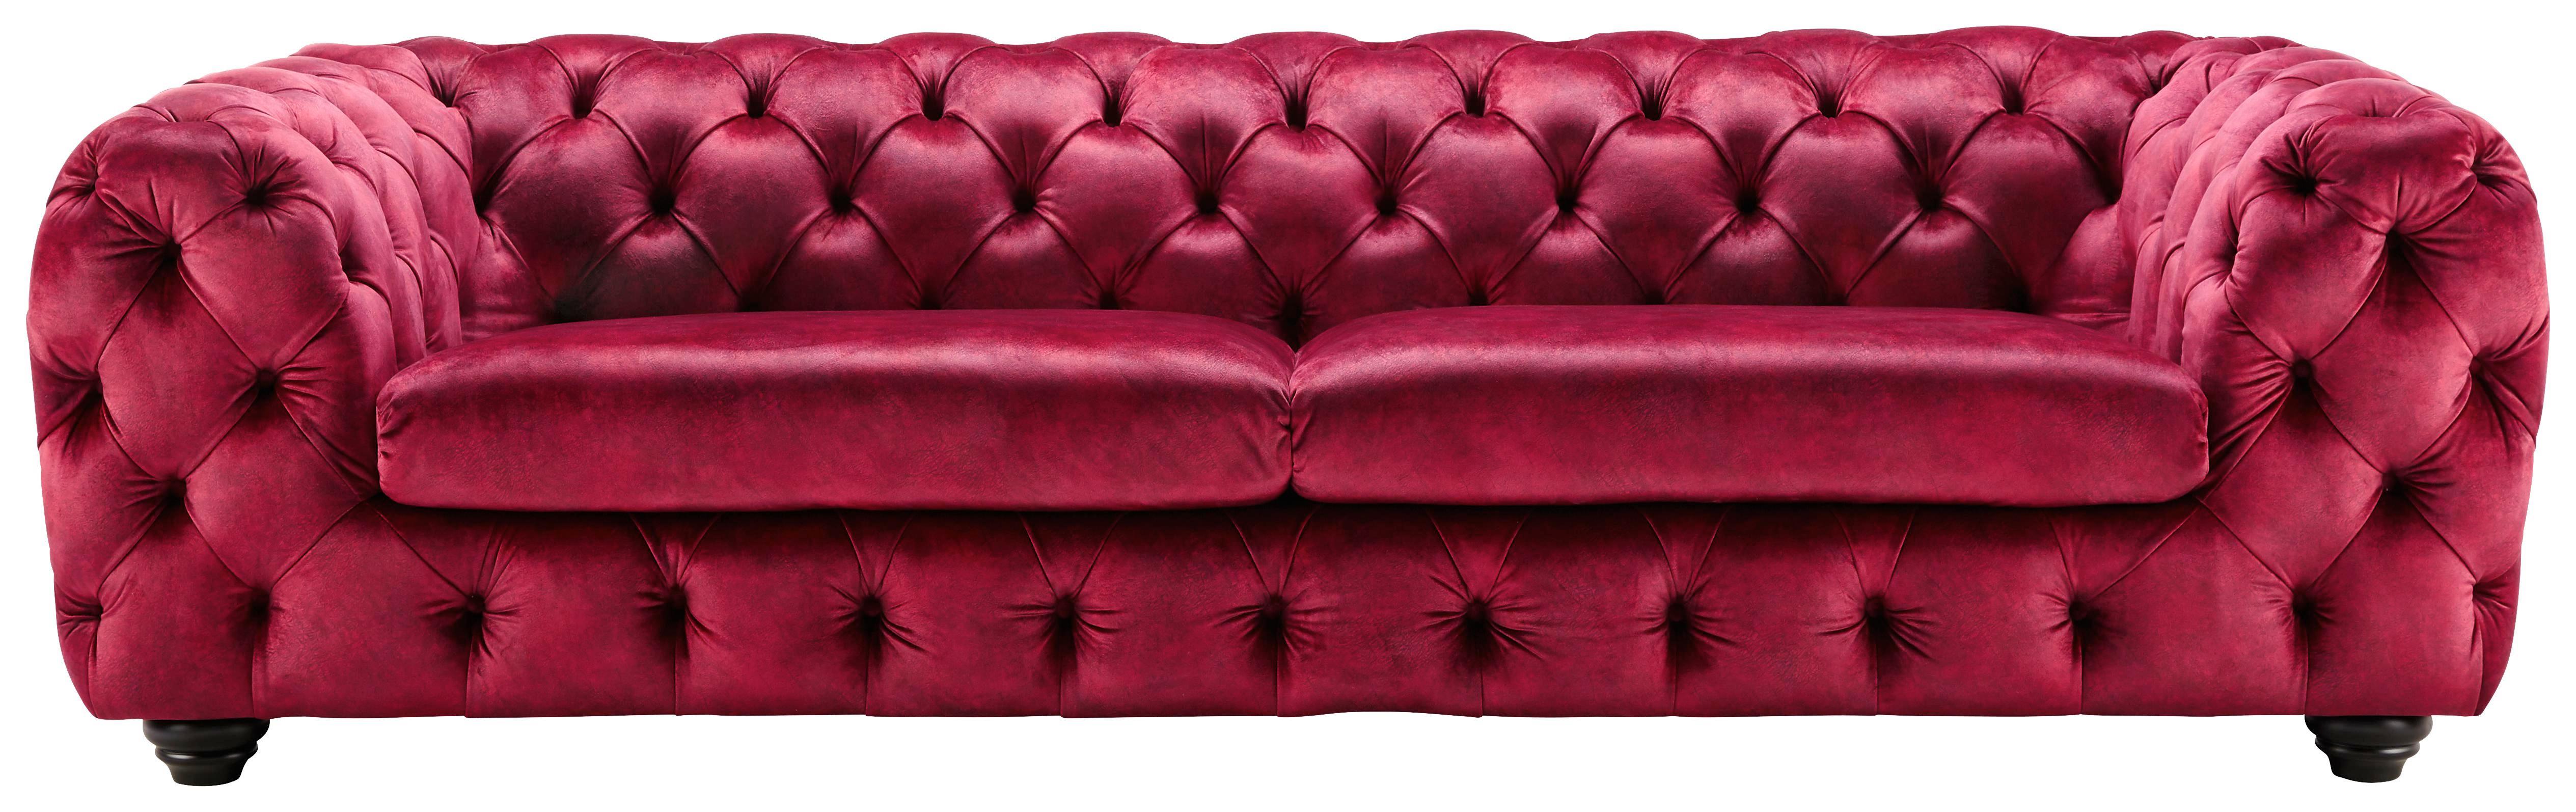 Dreisitzer-Sofa Samt Pink online kaufen mömax